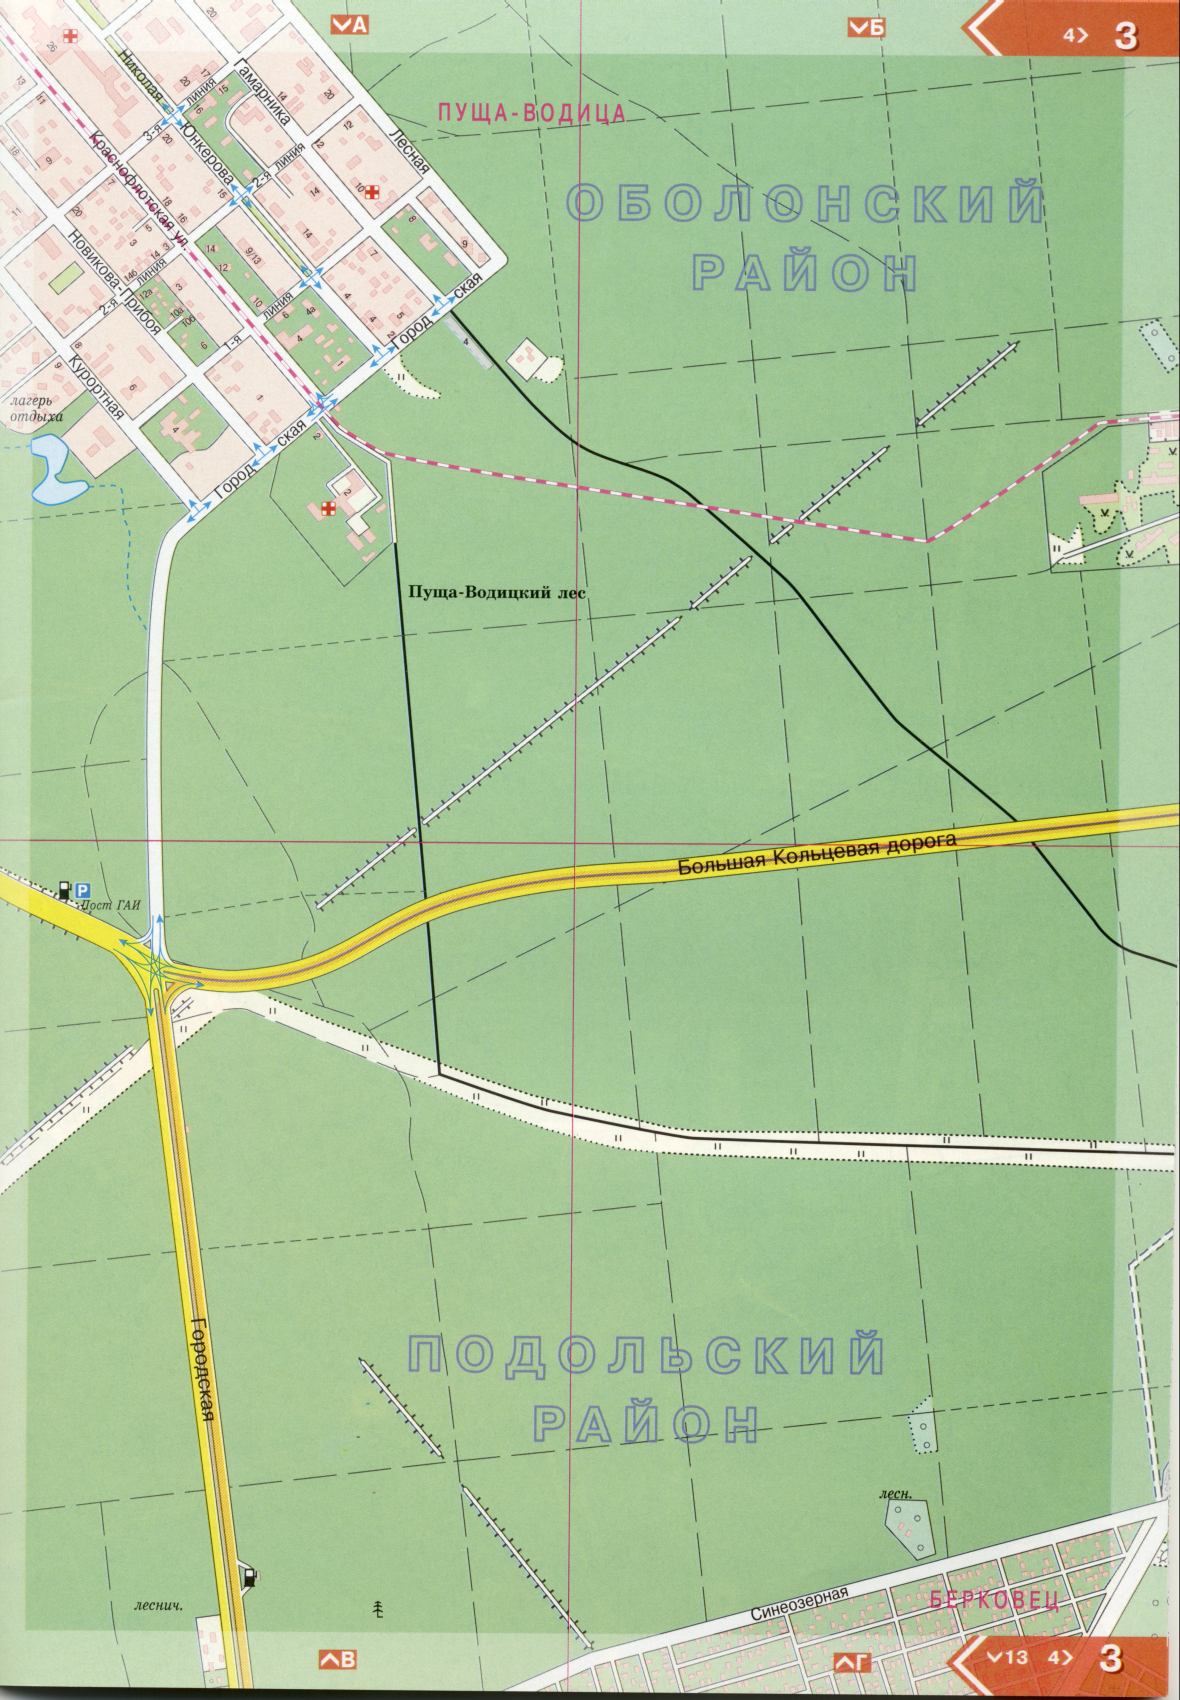 Kiew Karte Details 1cm = 150m für 45 Blatt. Karte von Kiew aus dem Atlas von Autobahnen. Laden Sie eine detaillierte Karte von Obolonskyi Kreis Kiew